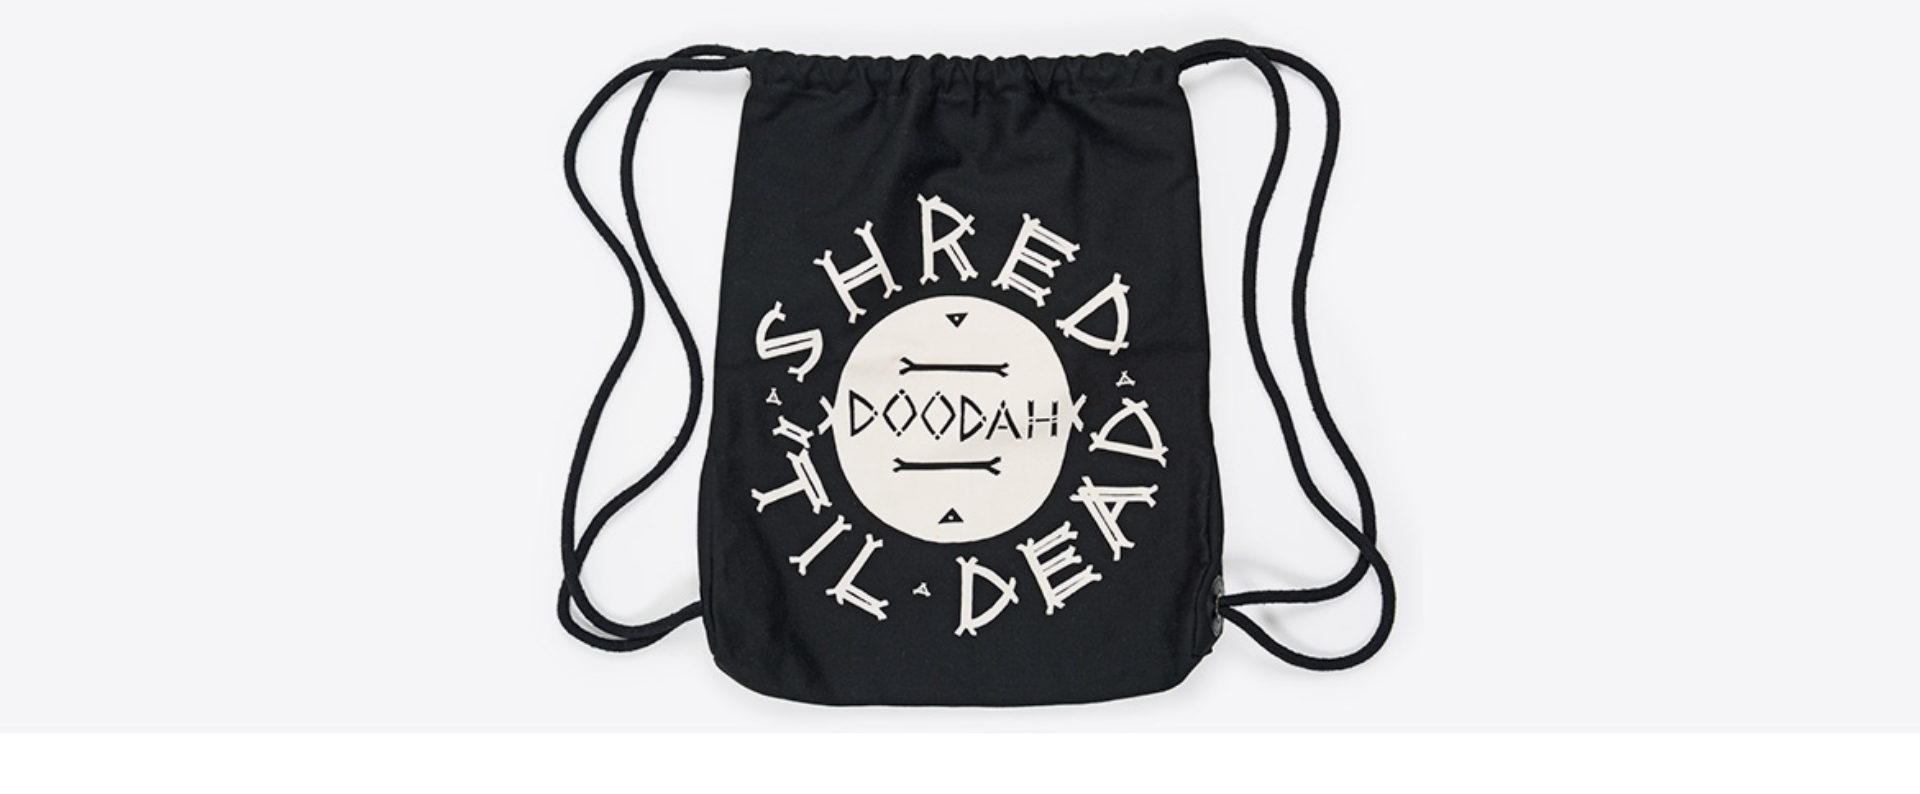 Hipster Bag Mit Logo Bedruckt Doodah